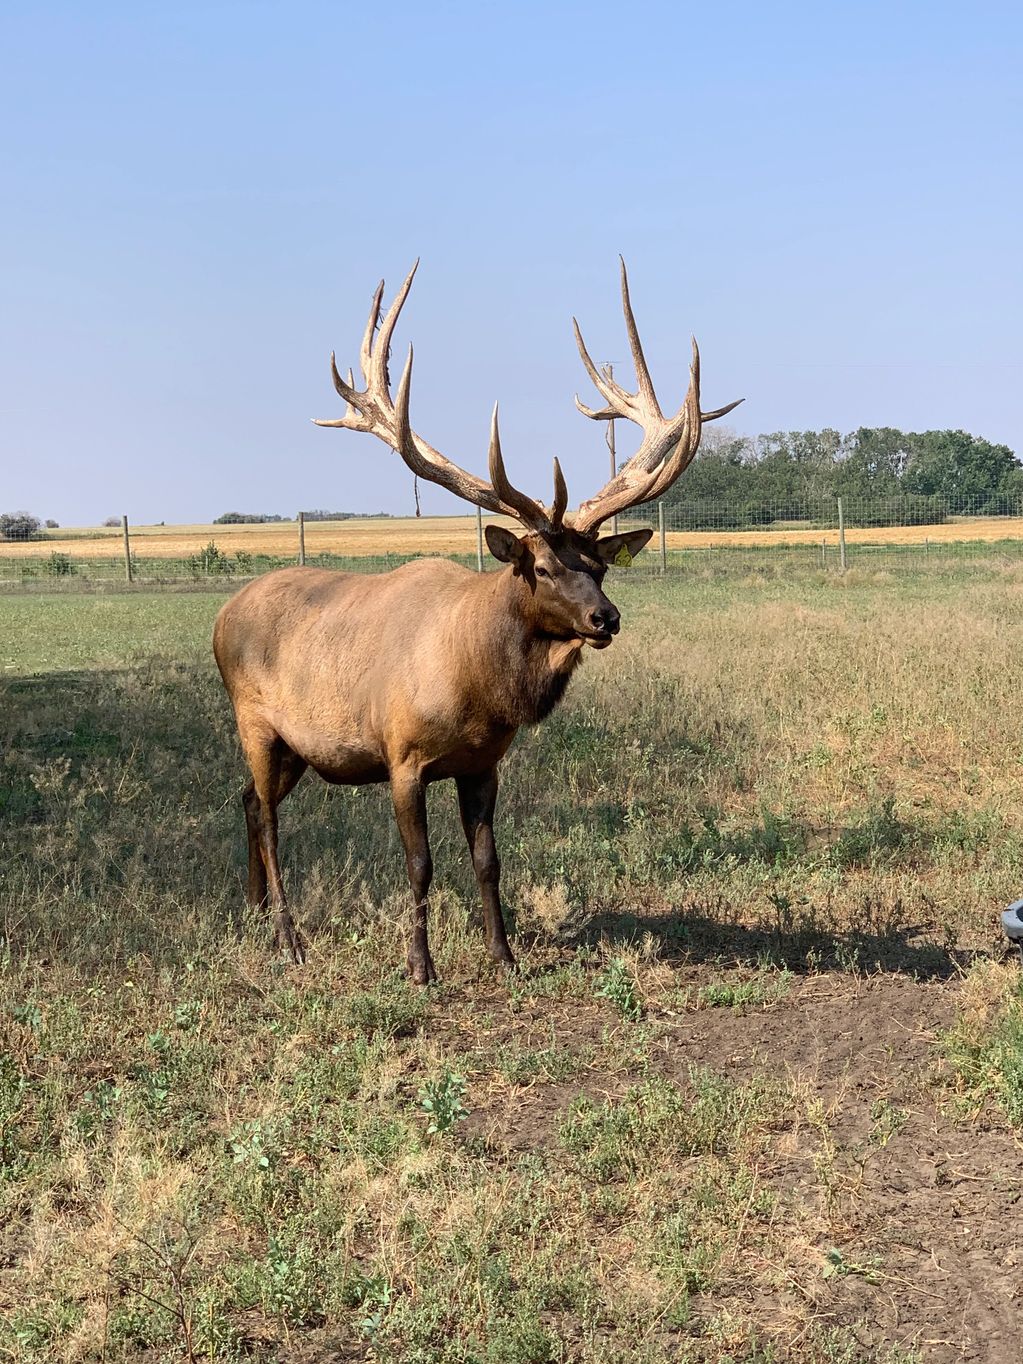 Bull elk with huge antlers in summer pasture